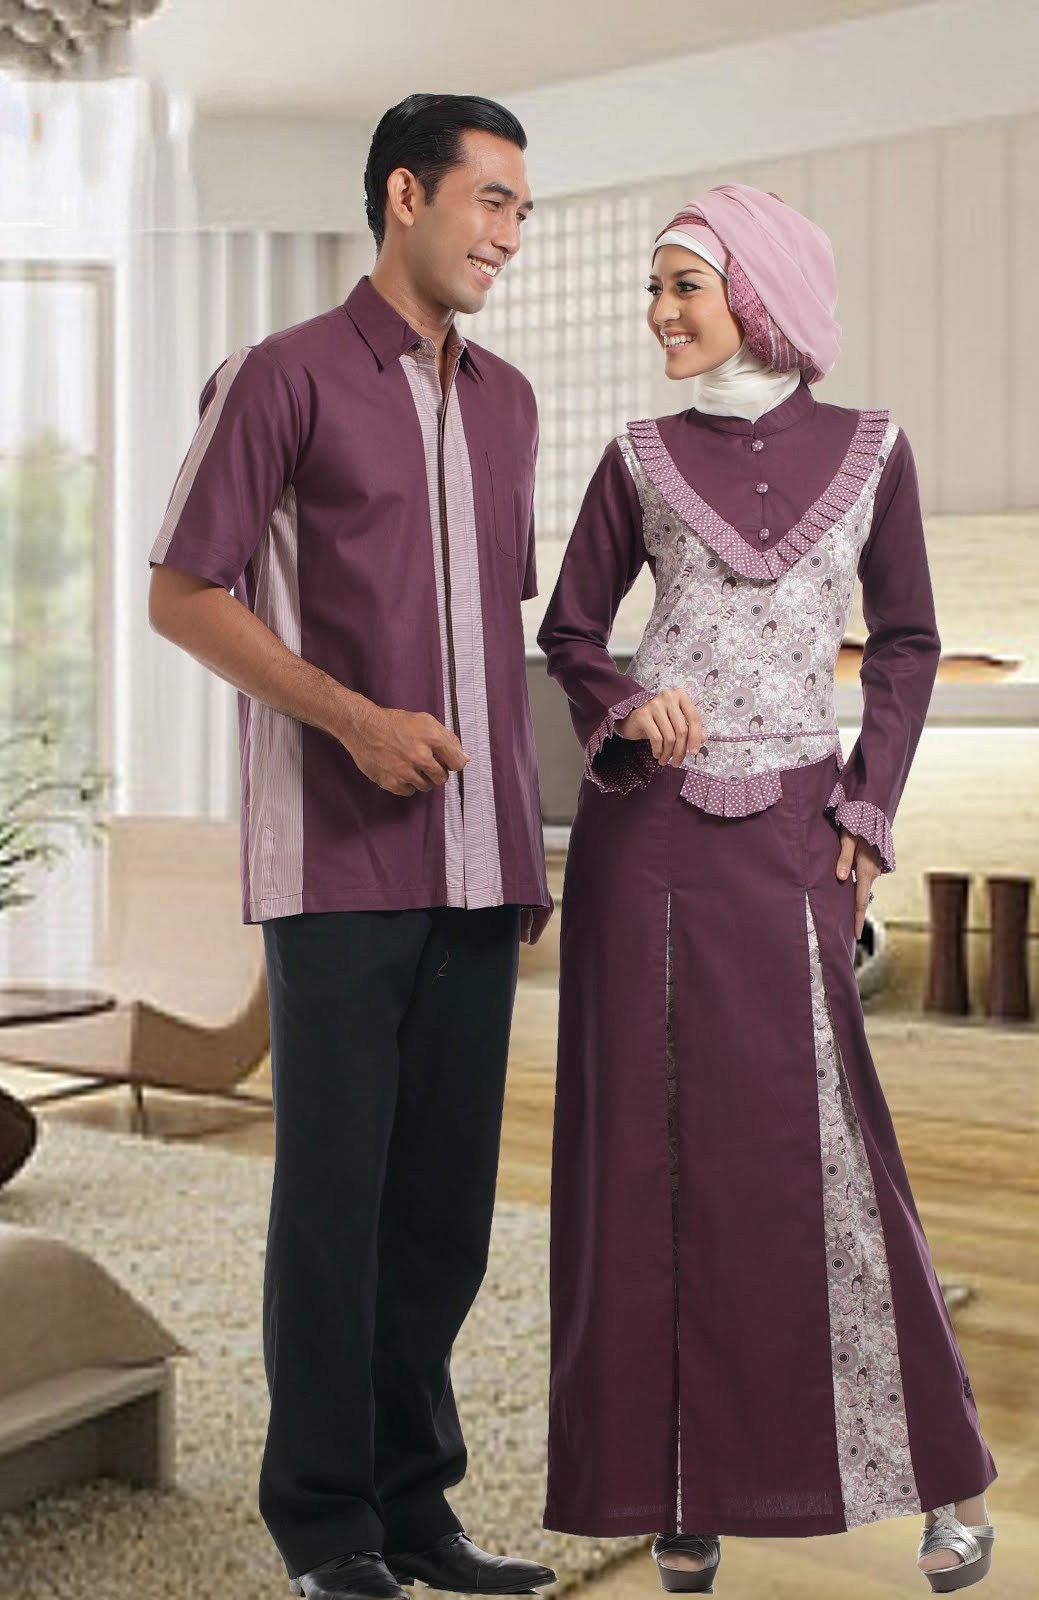 Baju Gamis Batik Menjadi Yang Trend Gamis Muslim 2013  Short News 